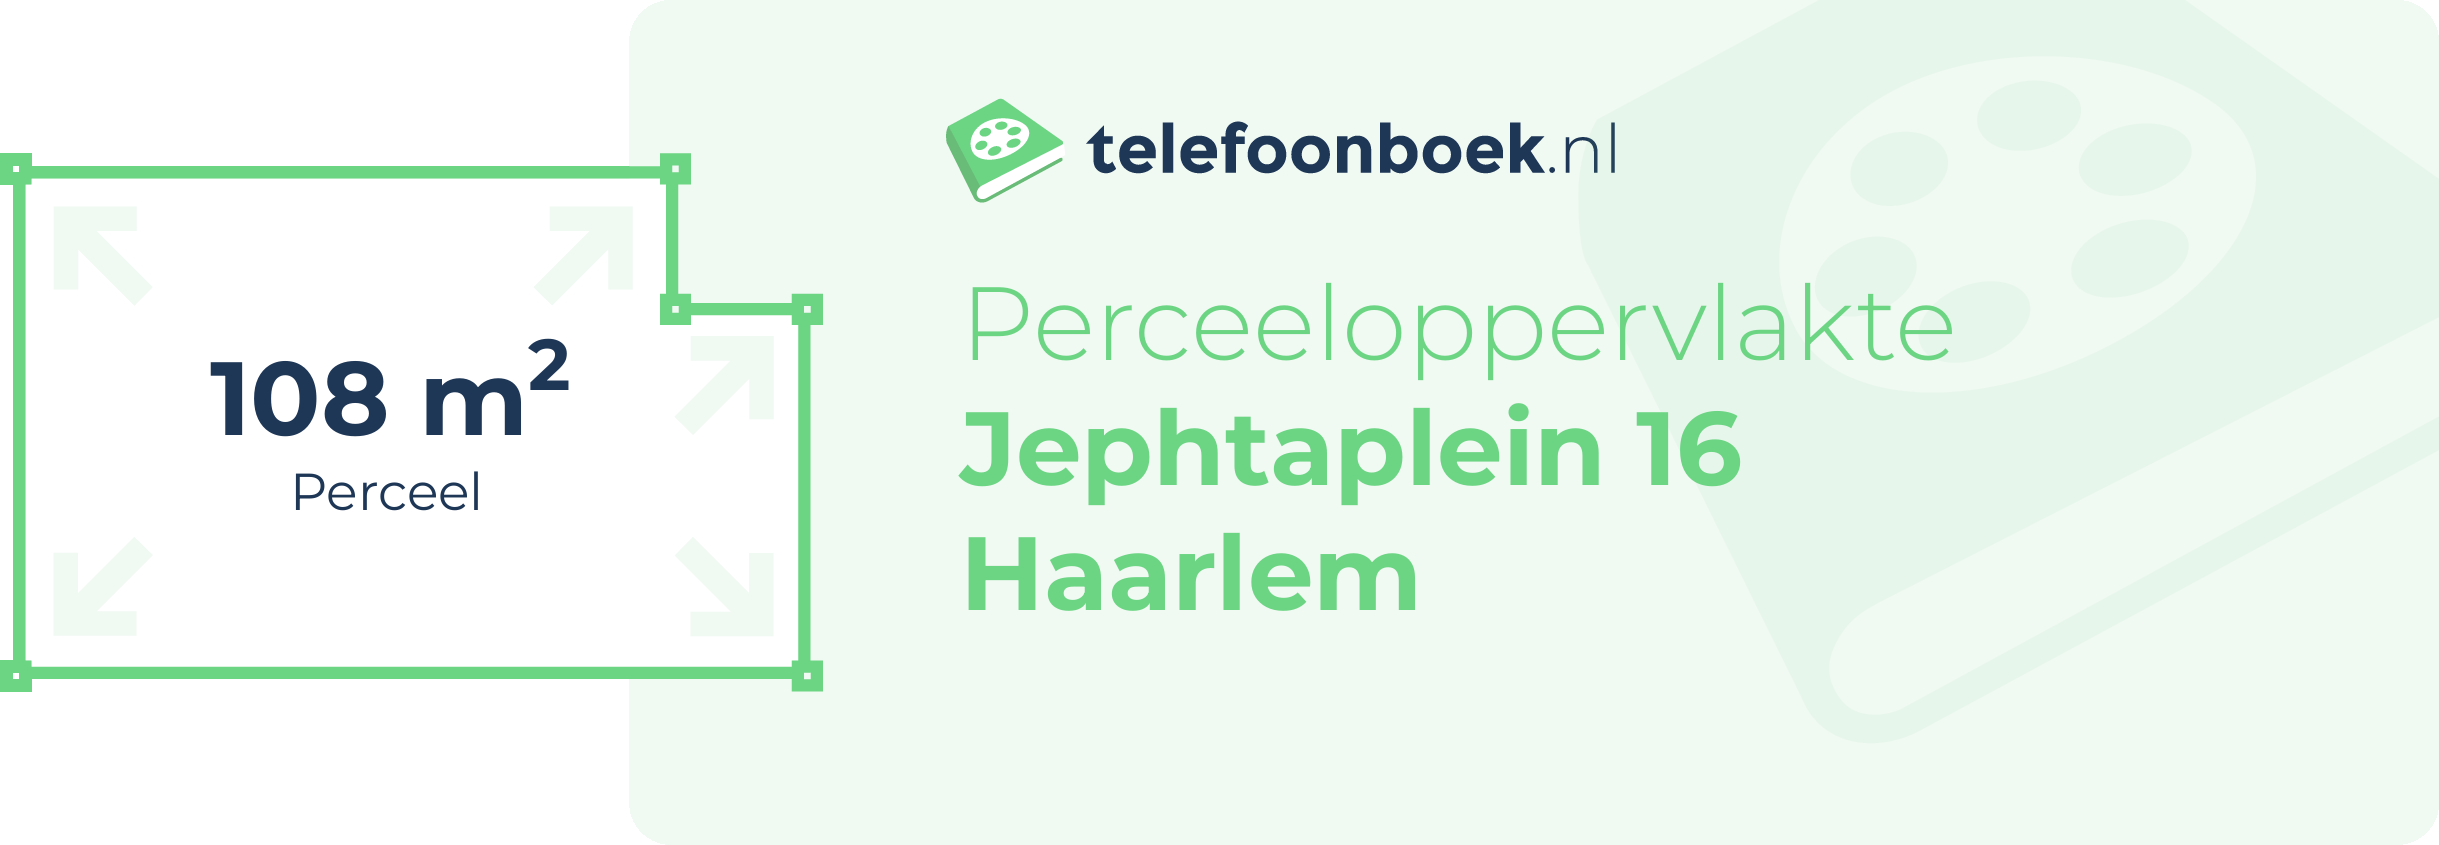 Perceeloppervlakte Jephtaplein 16 Haarlem